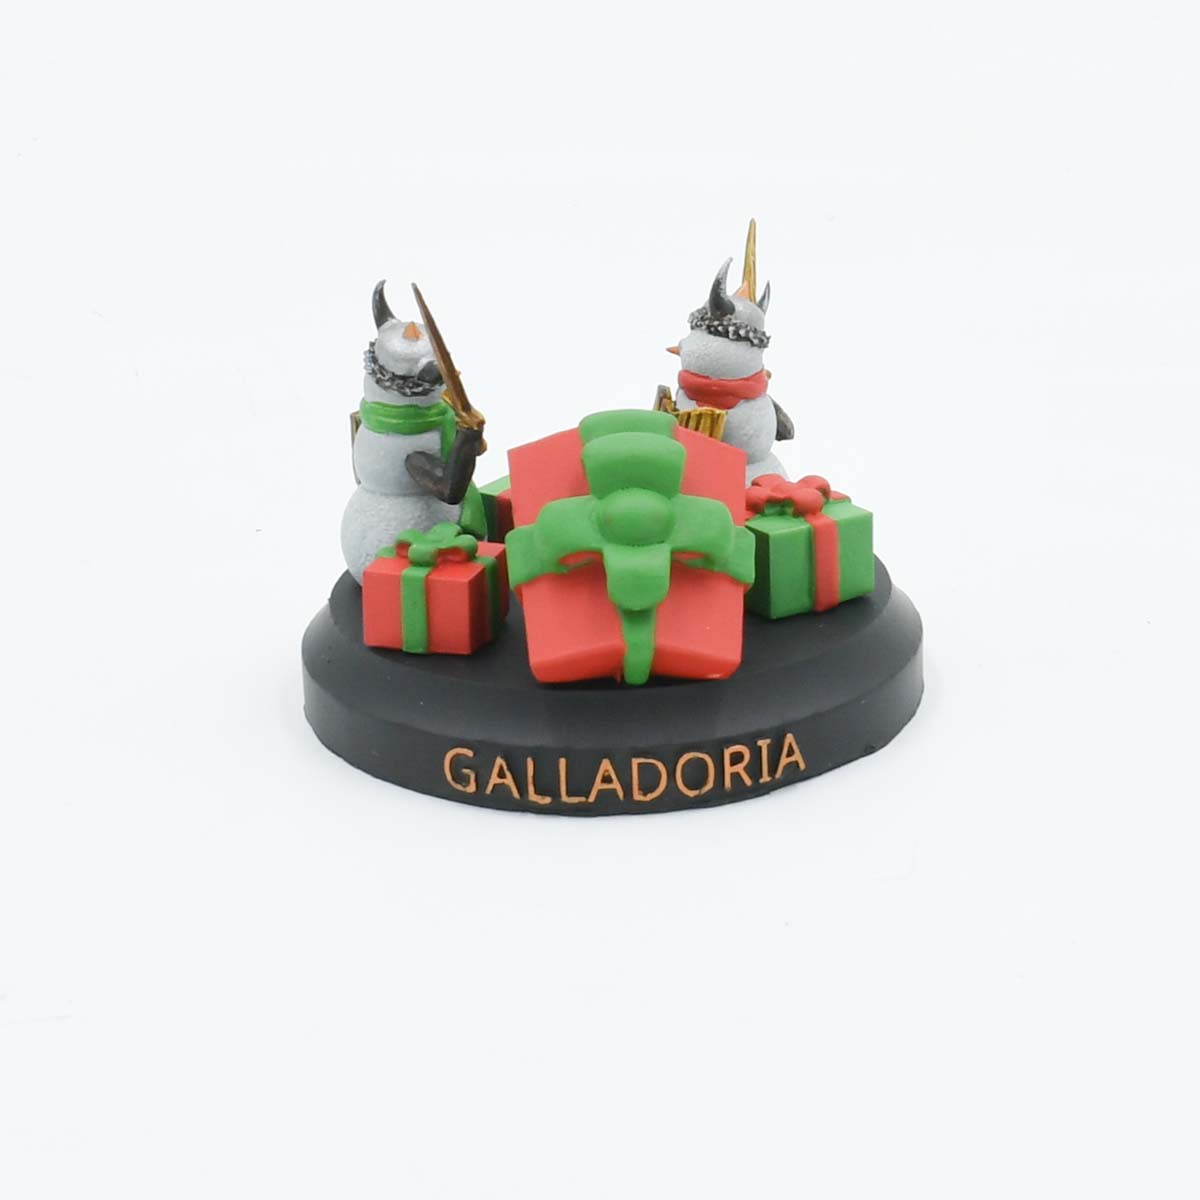 Galladoria Games 2021 Holiday Collectible